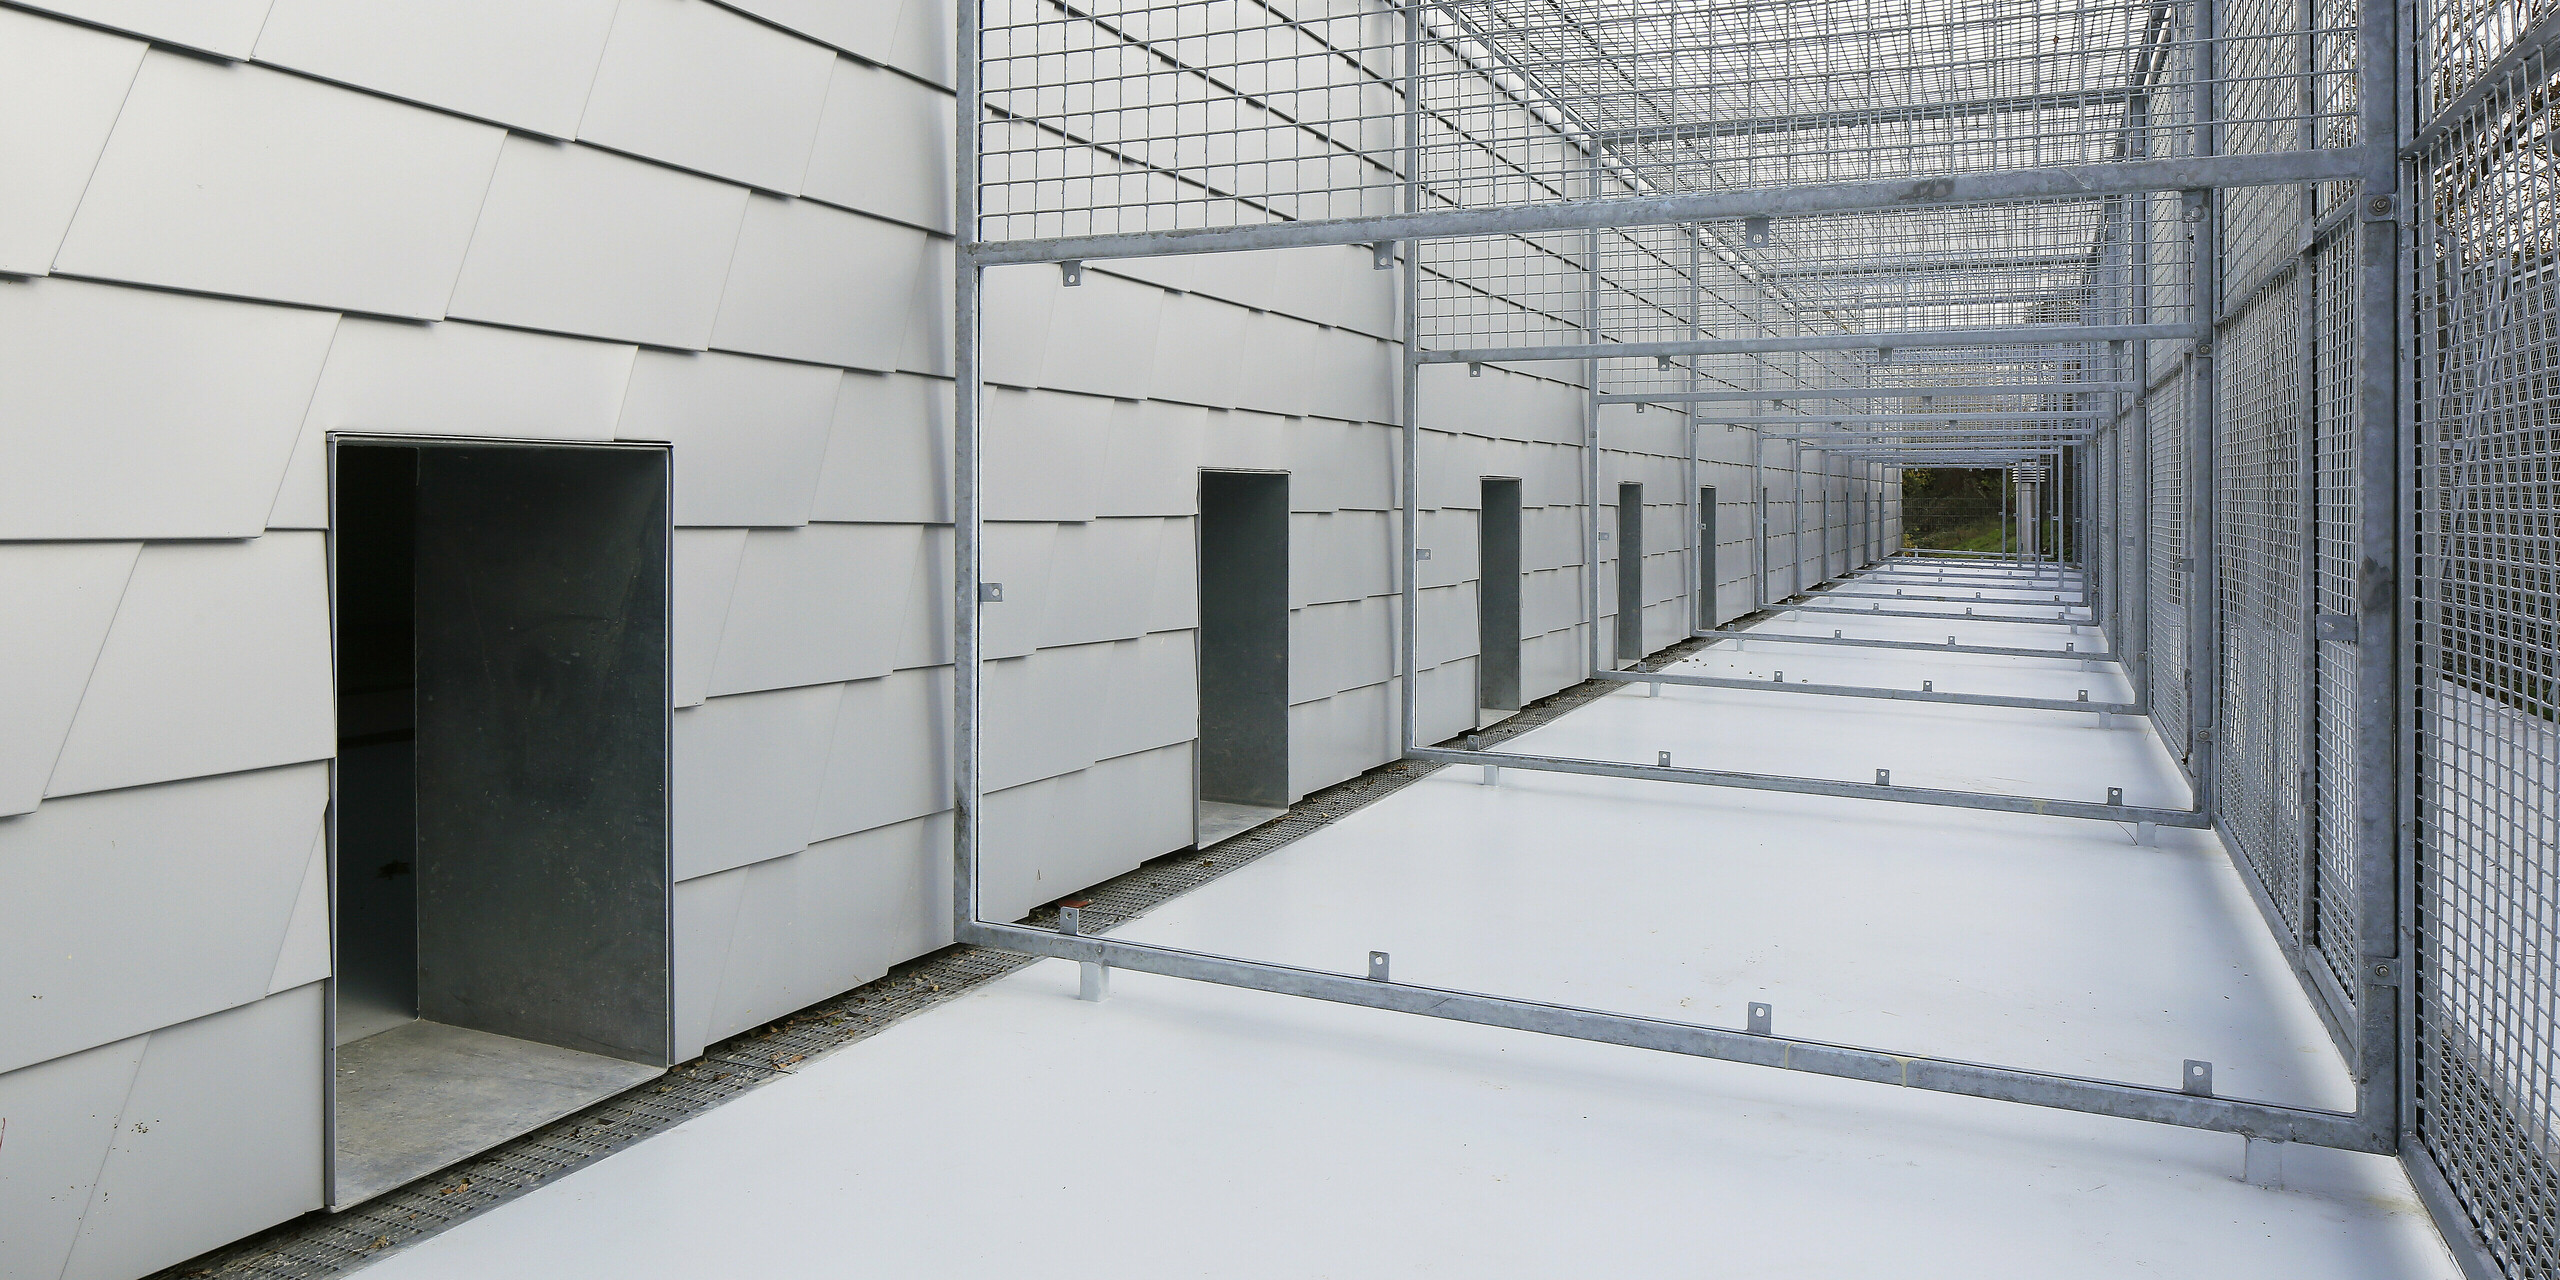 Nahaufnahme der Tierhaltungsanlage in Mullhouse umhüllt von PREFA Dach- und Wandschindeln in Silbermetallic